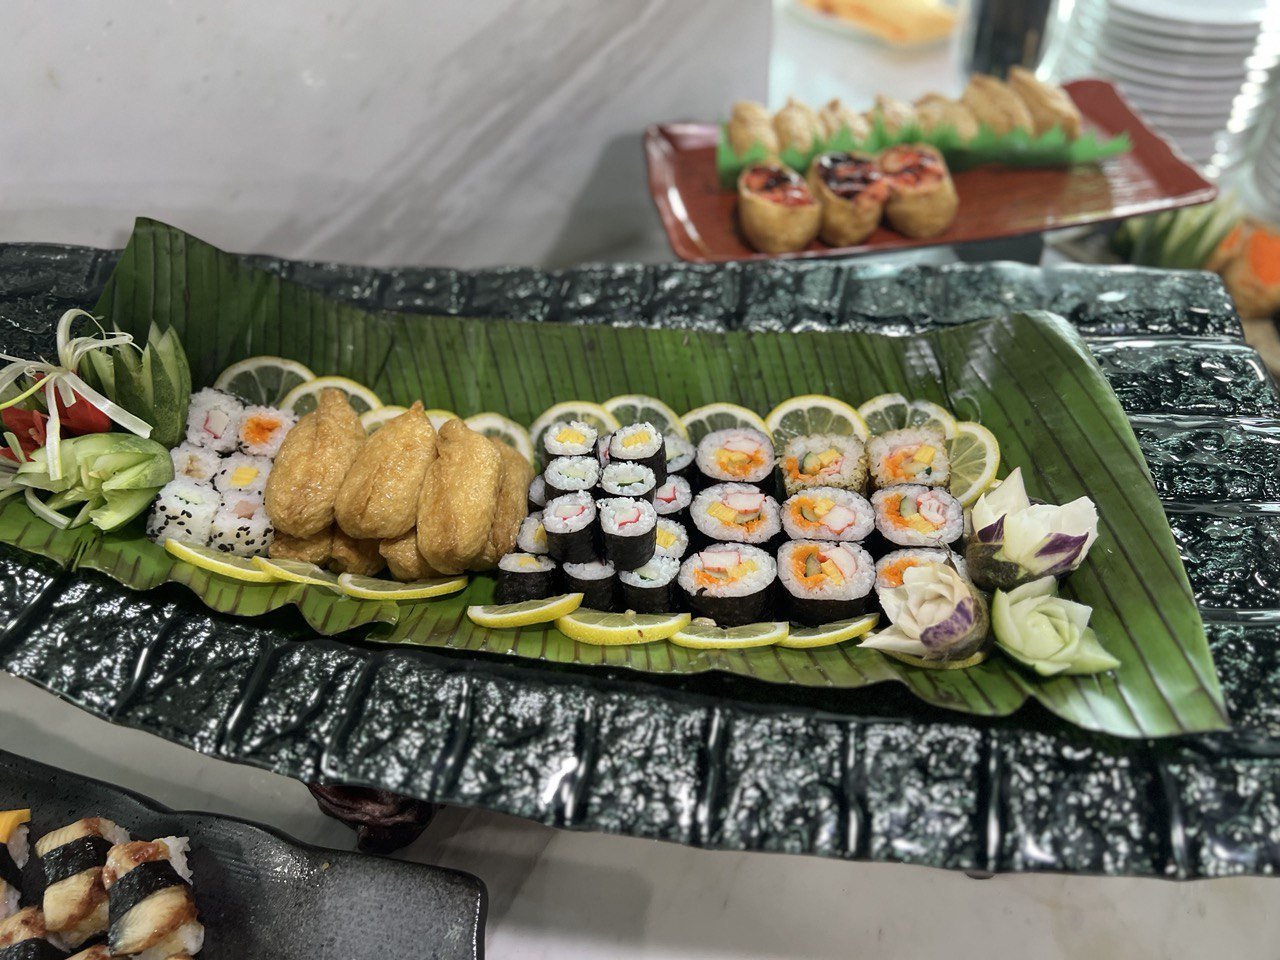 Aneka sushi Jepun turut dihidangkan di bufet Ramadan ini